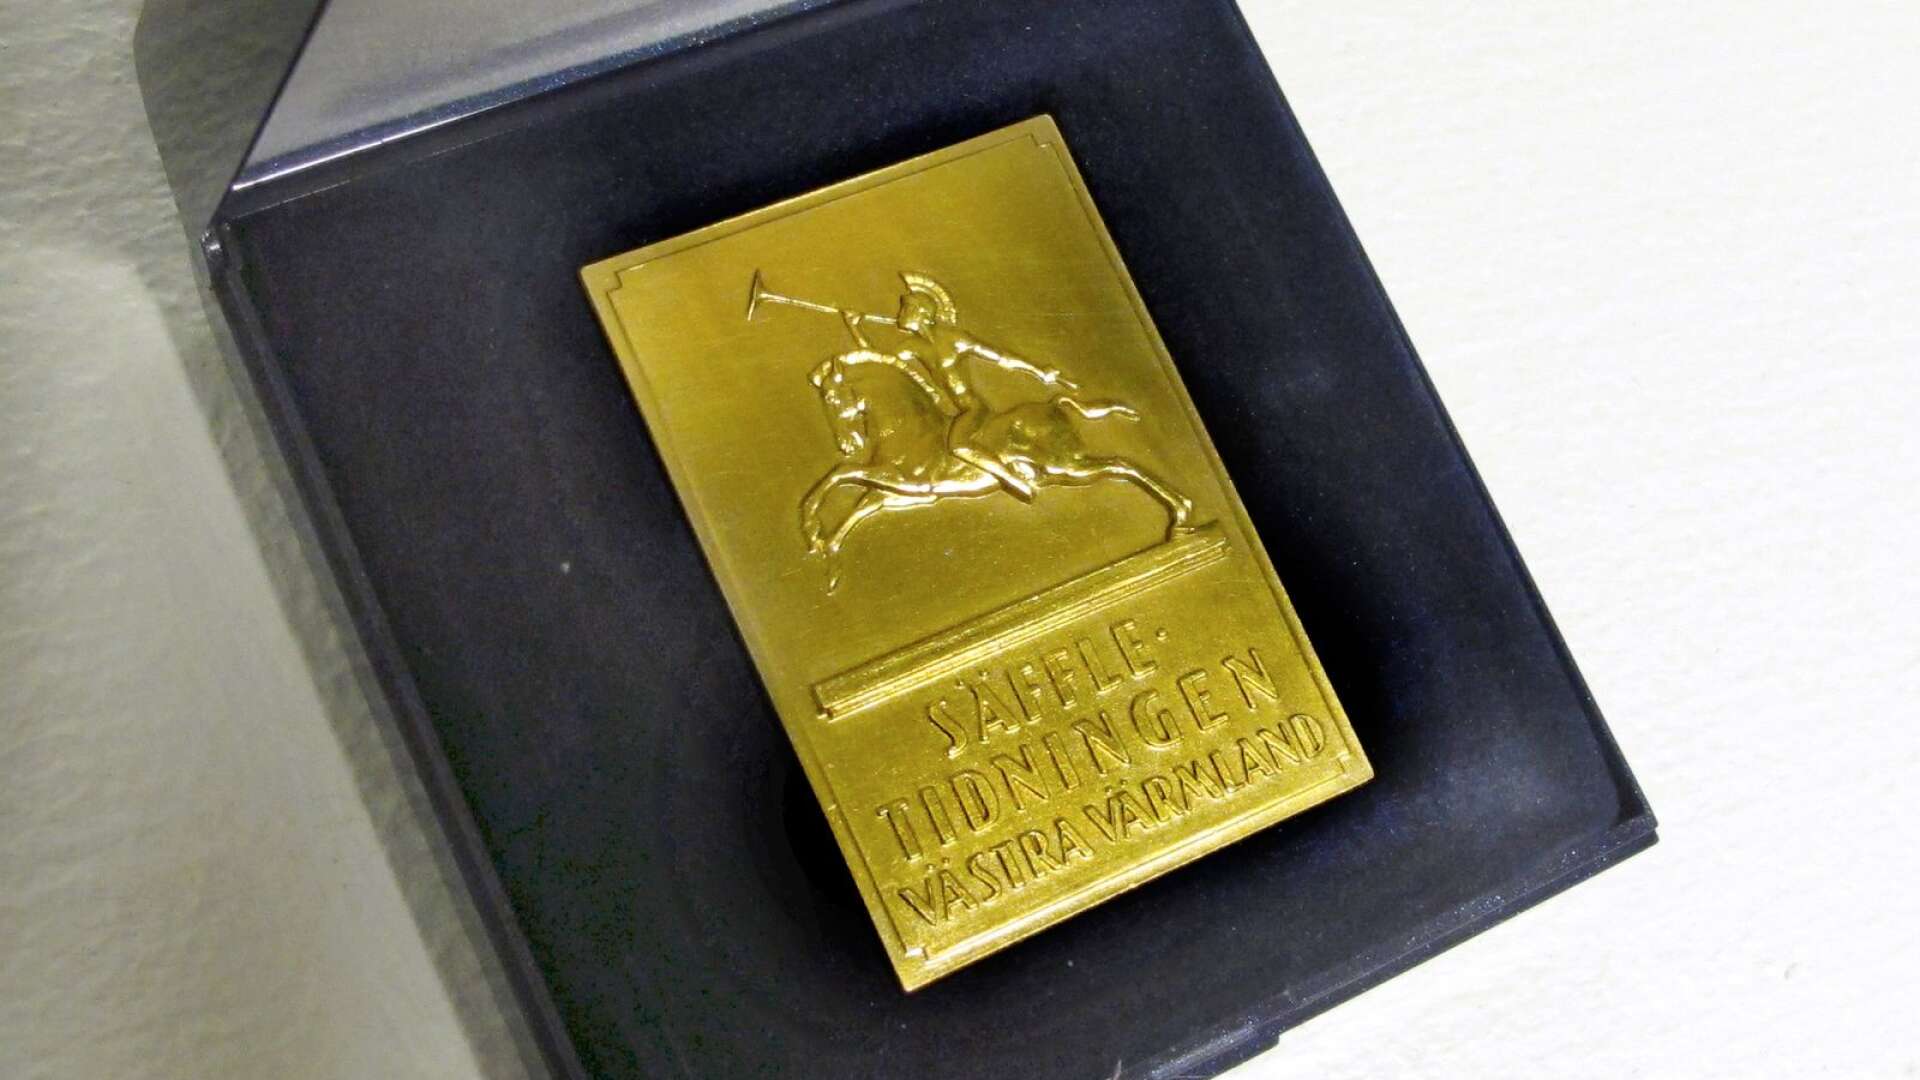 Säffle-Tidningens guldplakett delades första gången ut 1956 och regelbundet sedan 1965. 